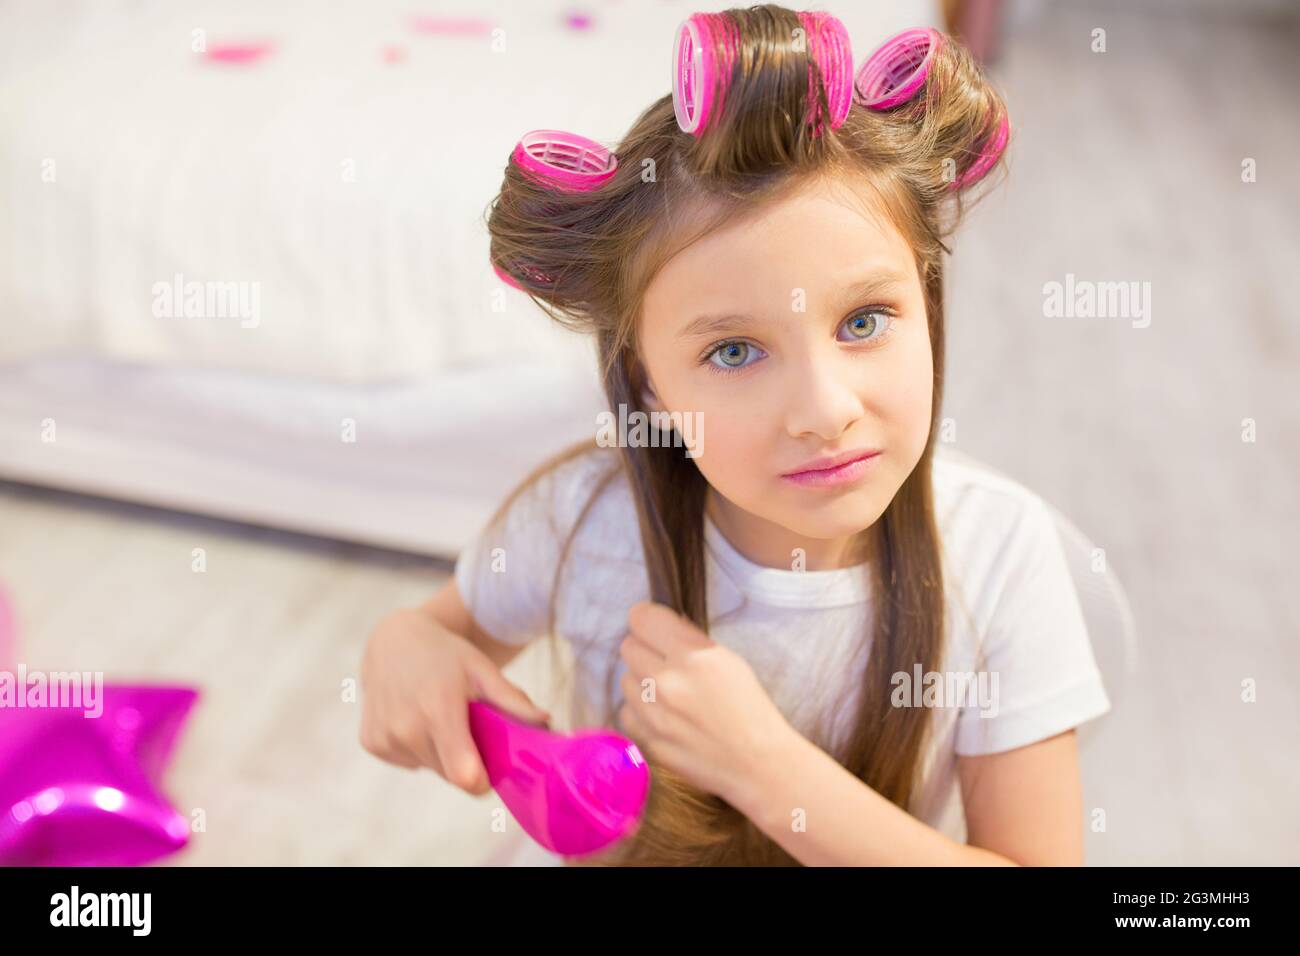 Cute girl brushing her hair. Stock Photo